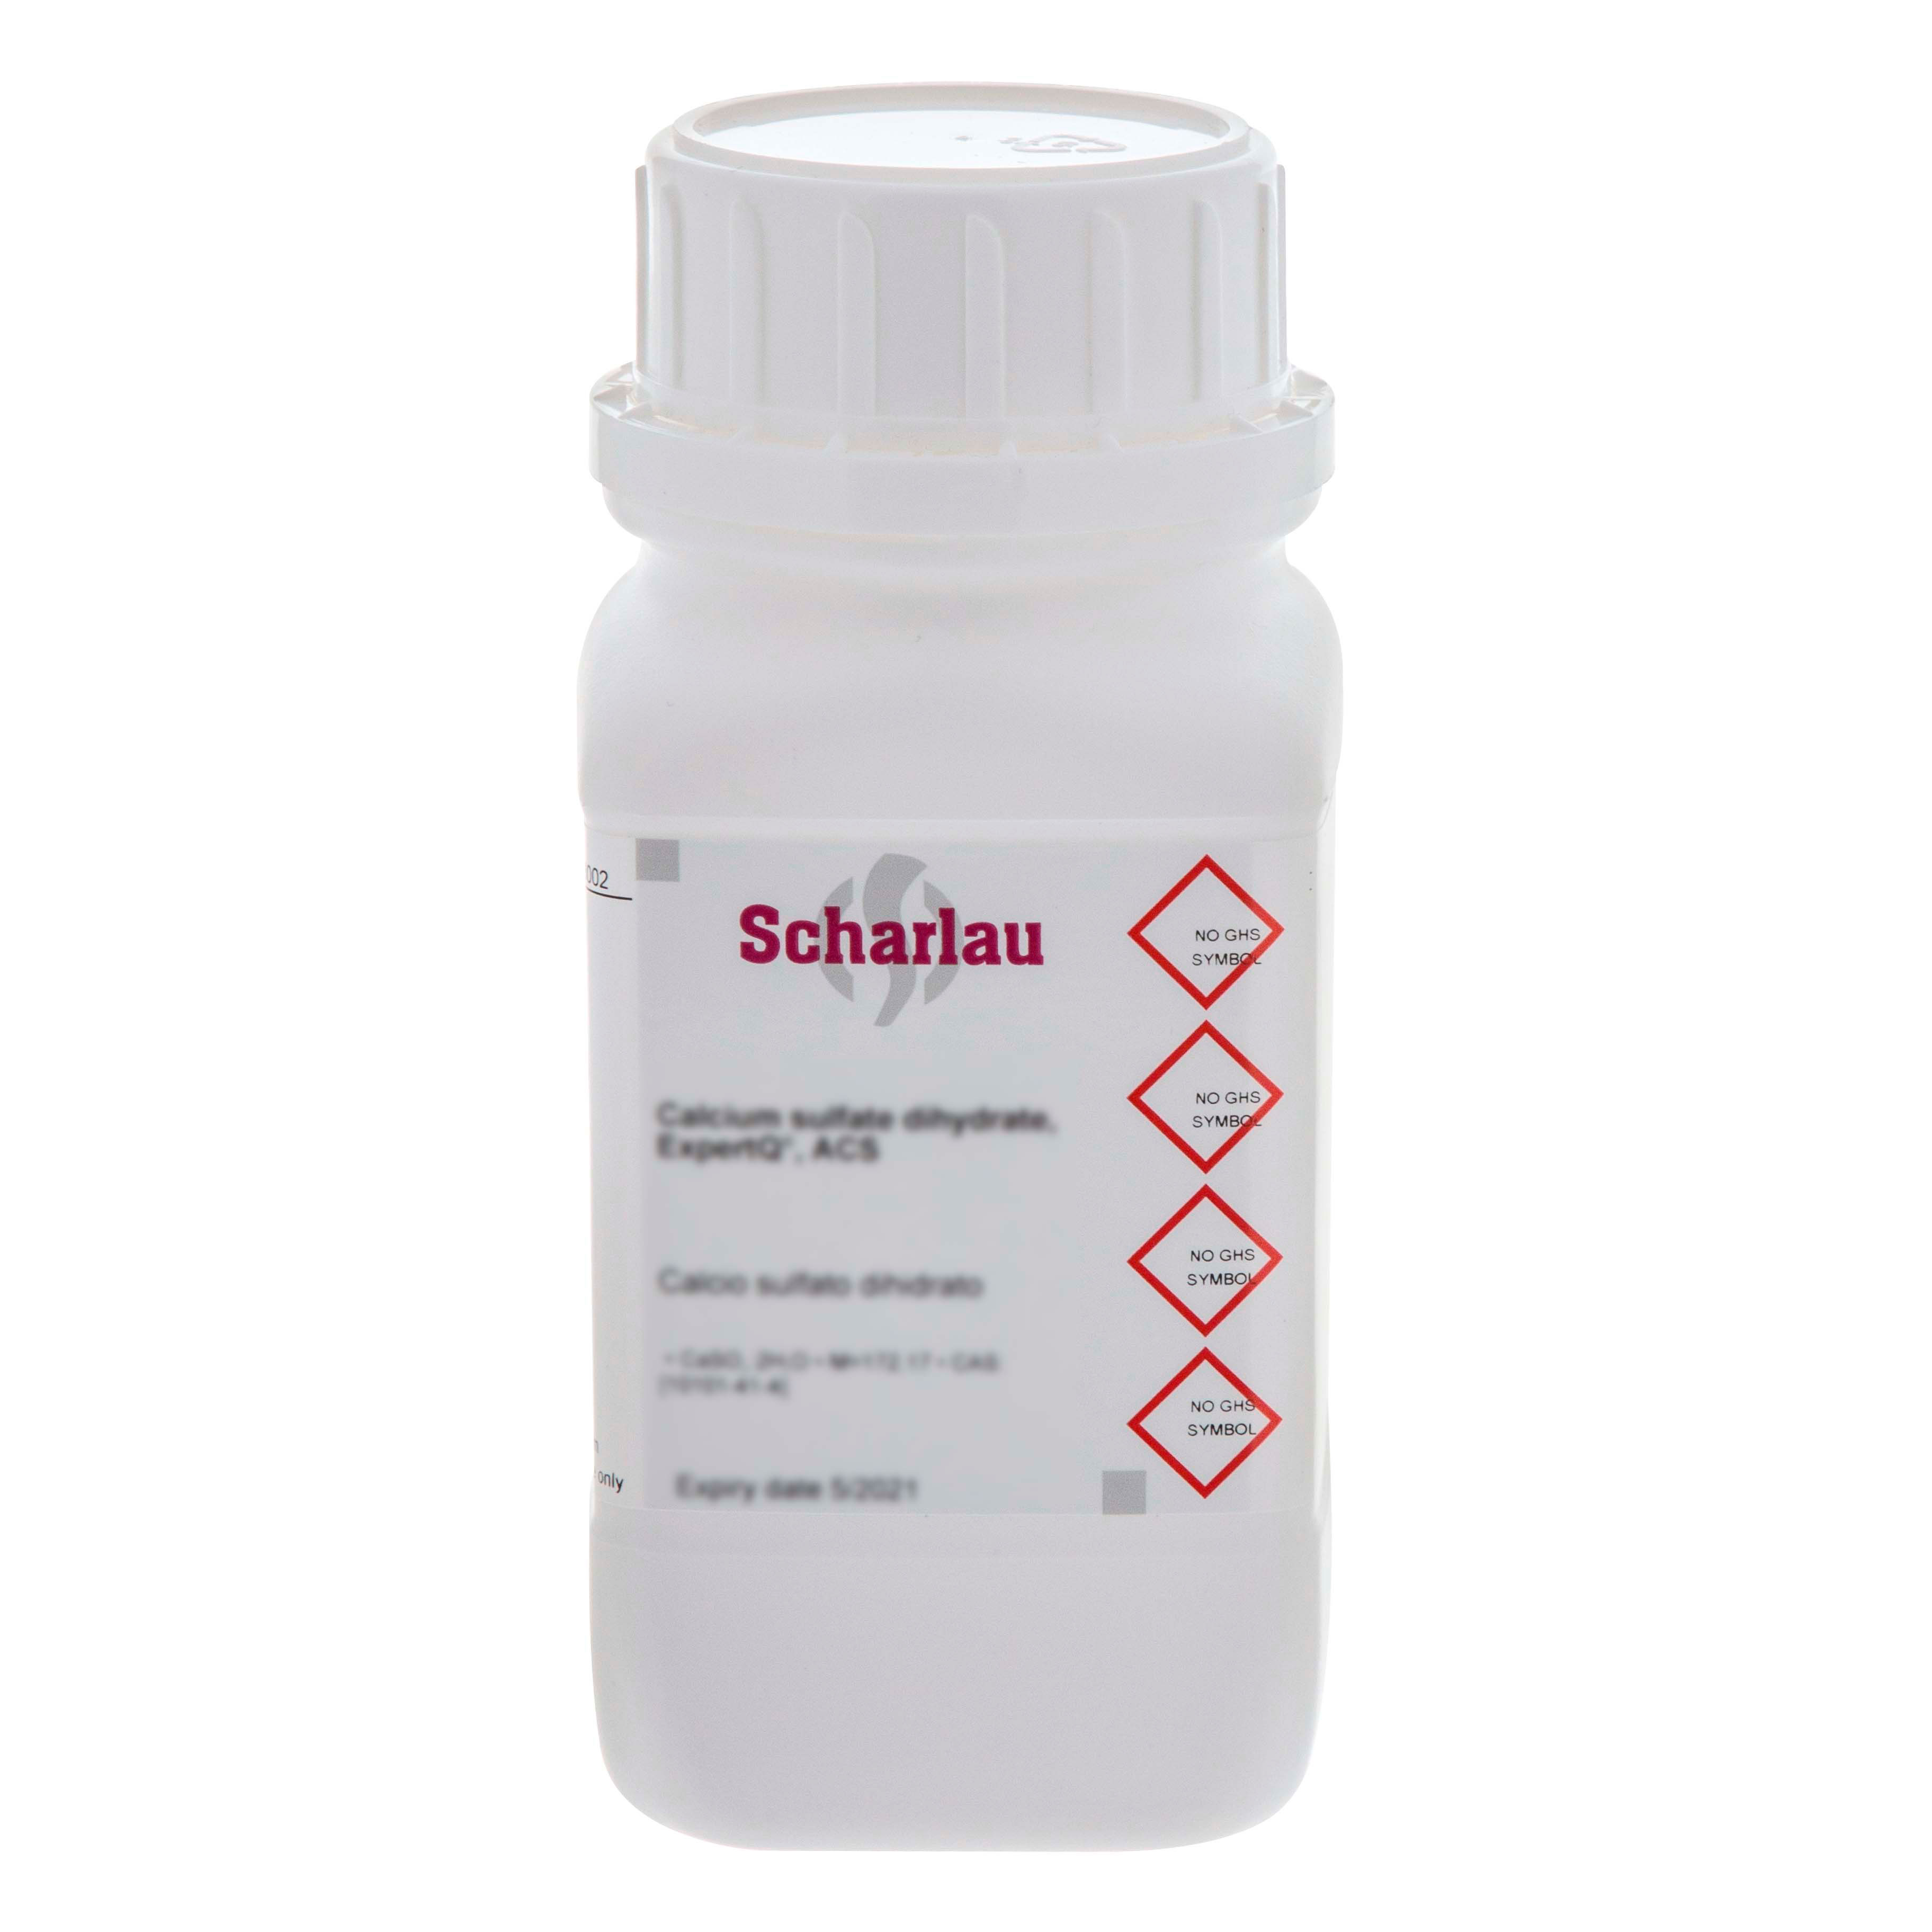 Selenium dioxide, EssentQ®